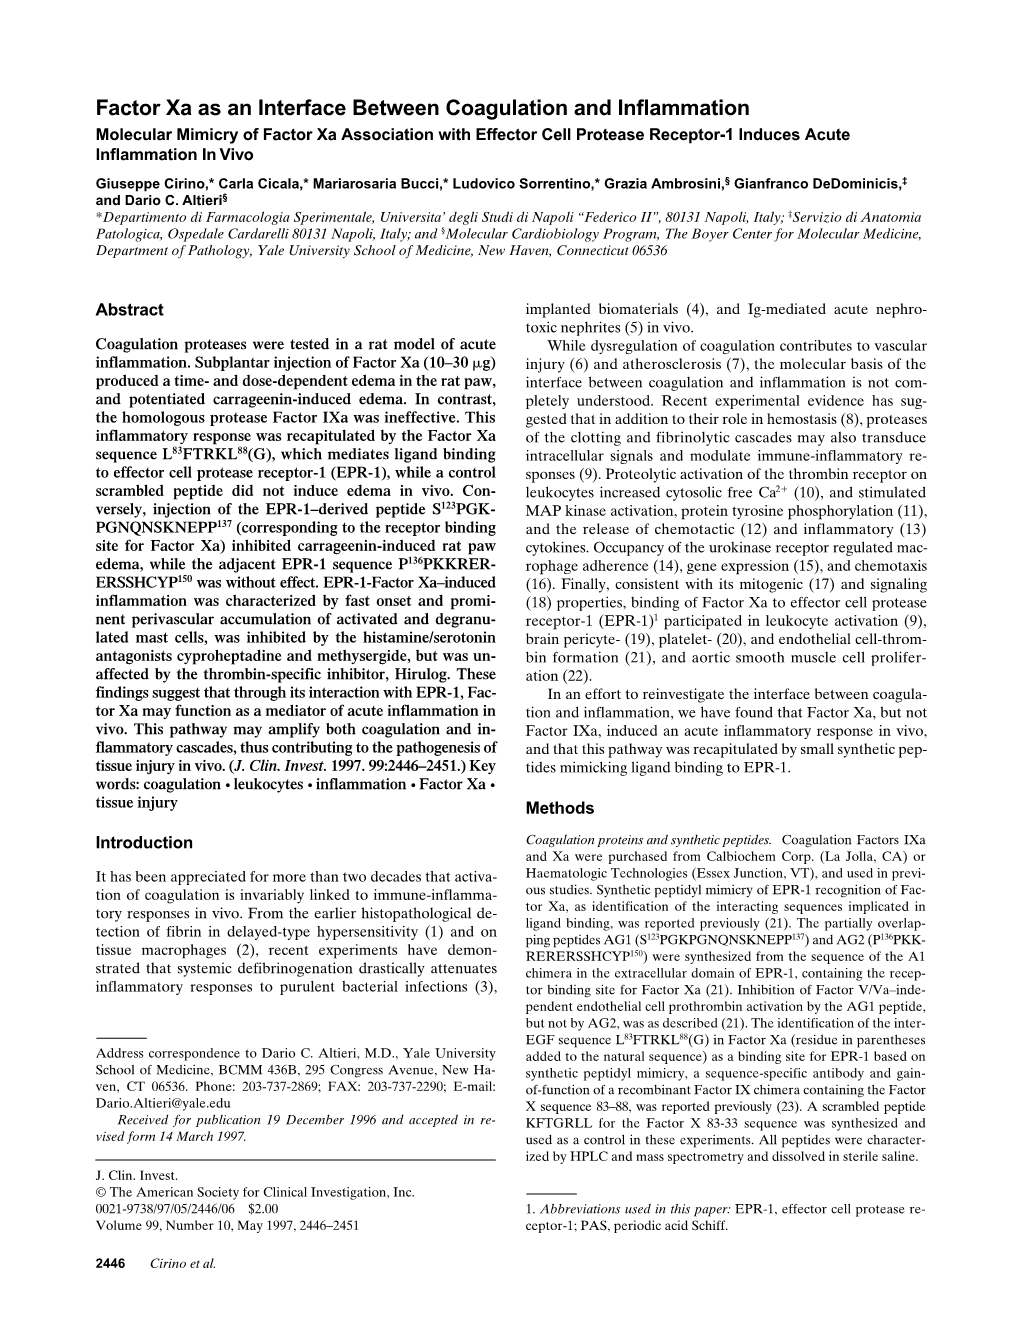 Factor Xa As an Interface Between Coagulation and Inflammation